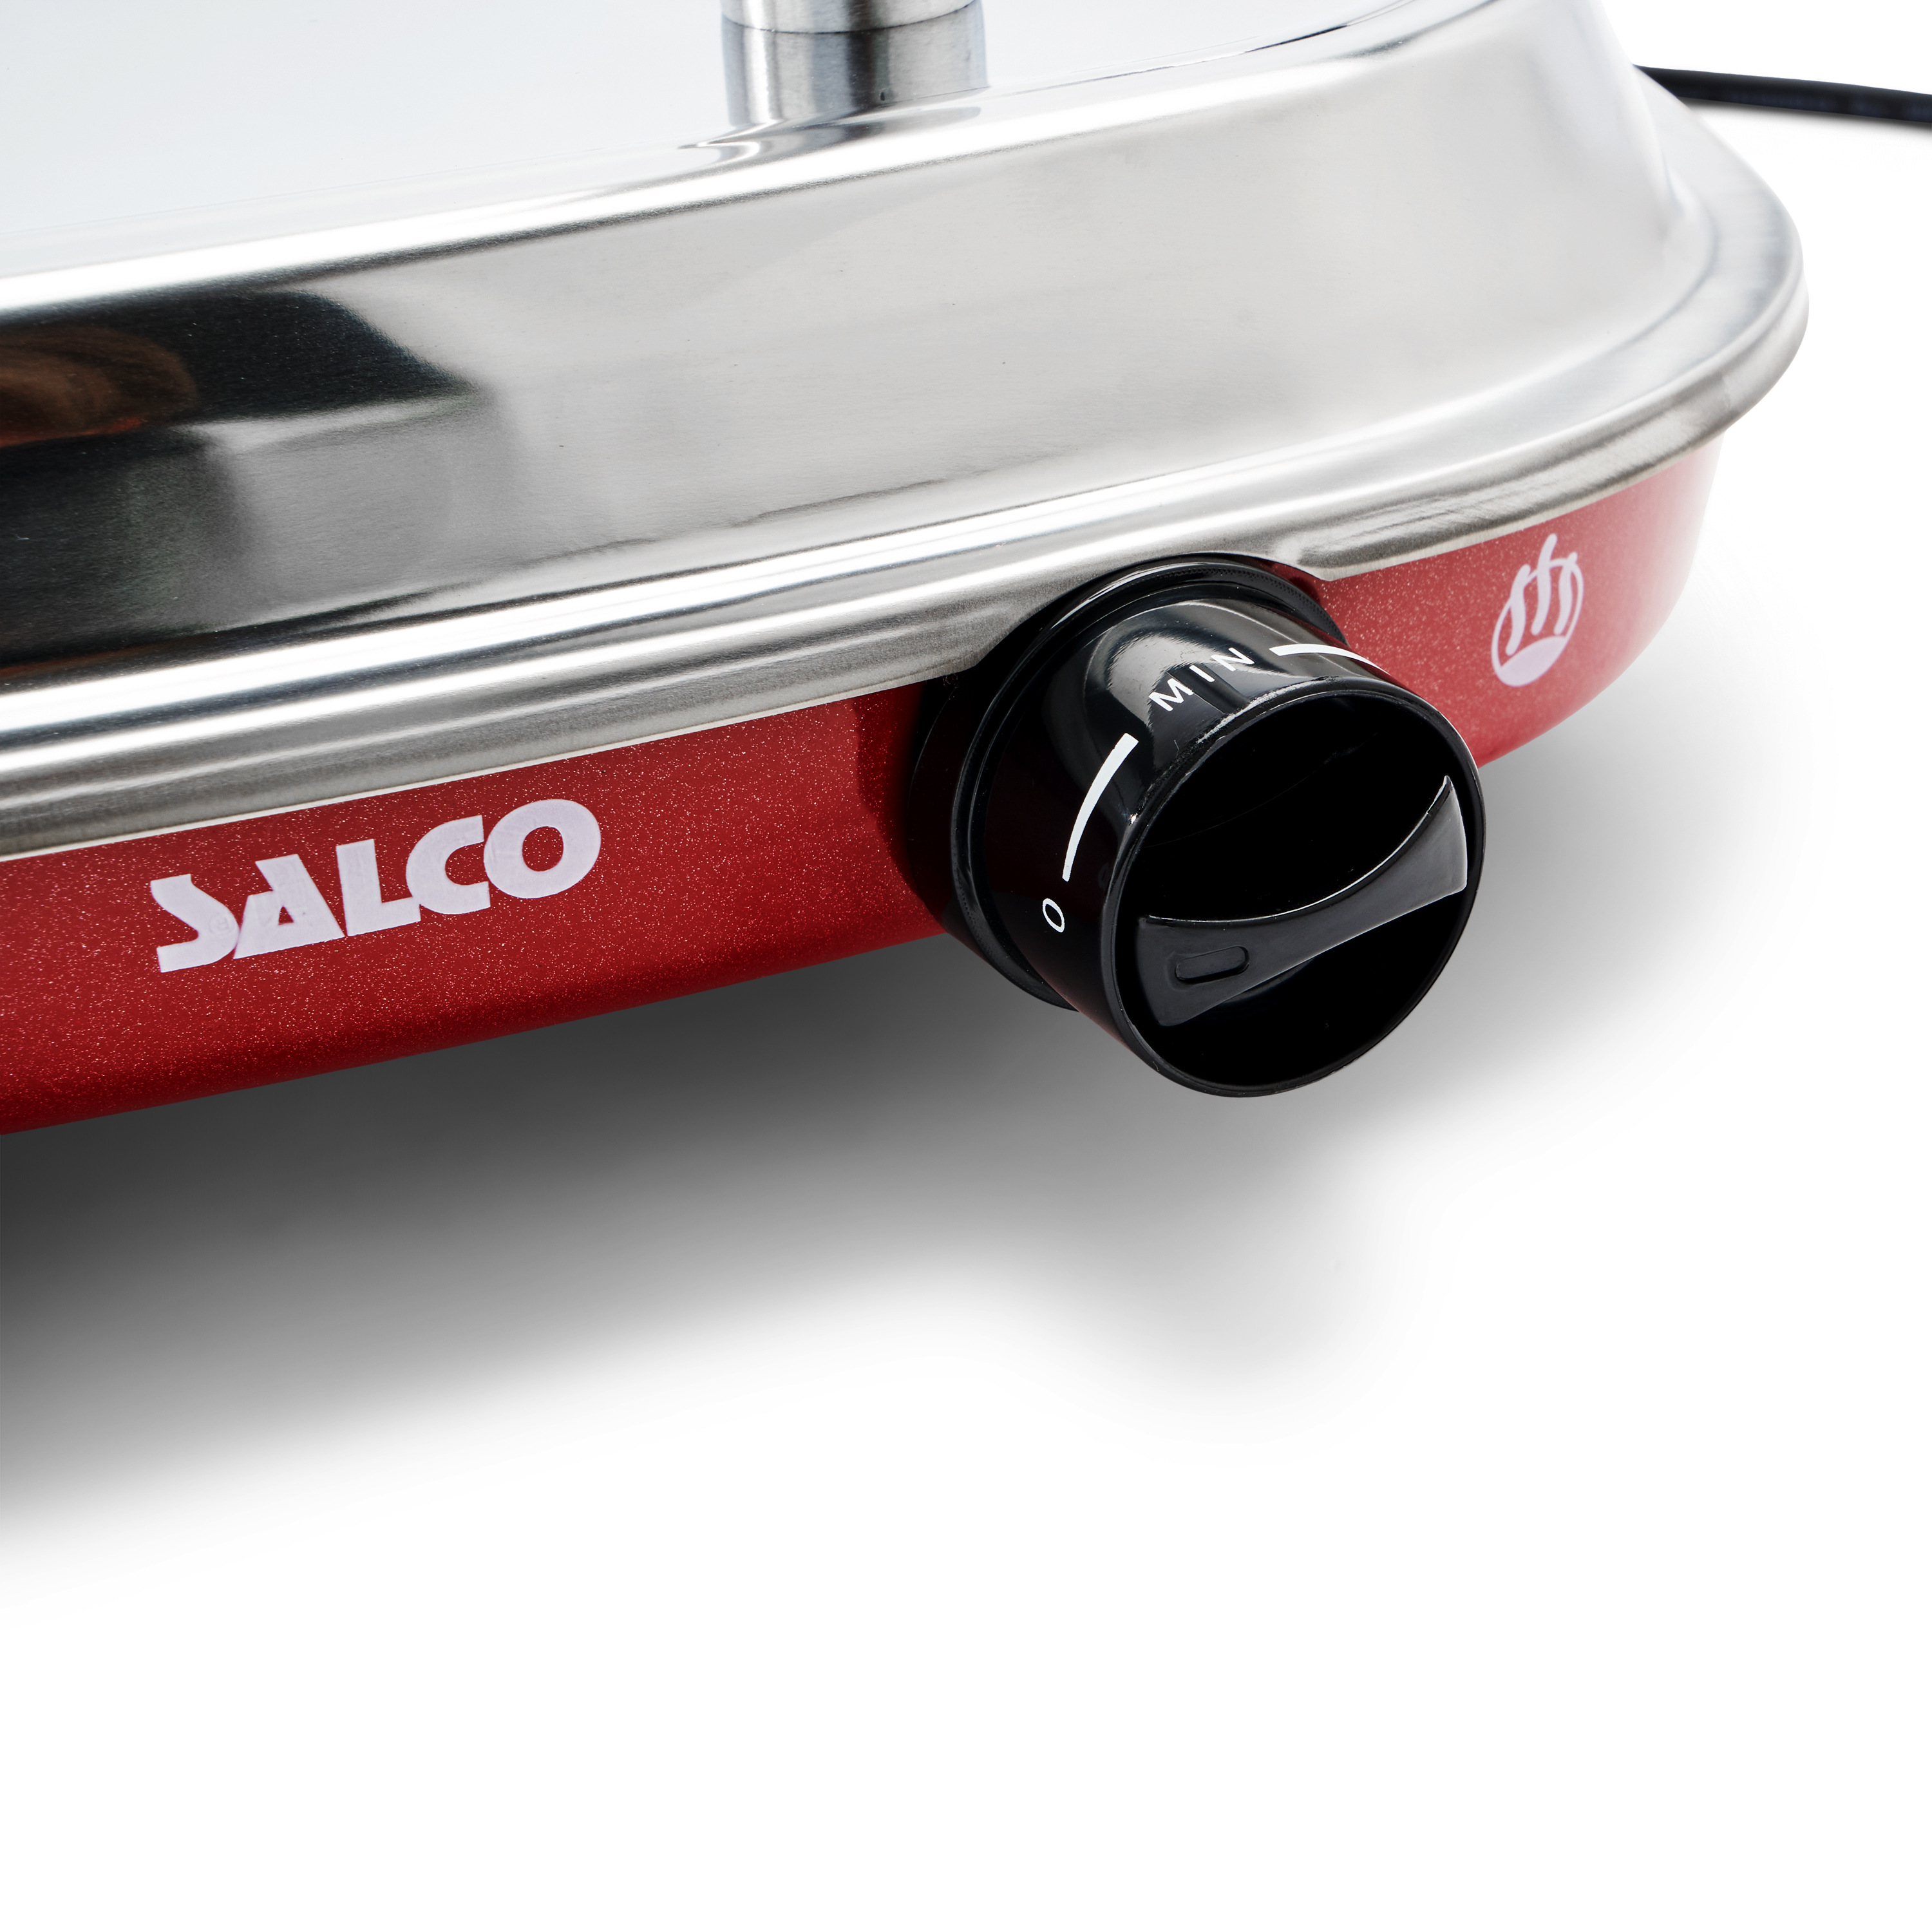 SALCO Salco HotDog Food und für Retro-Style rot) Würstchen Thermo-Control 450W Maker Dampfgarer Fast HotDog-Maker, Brötchen